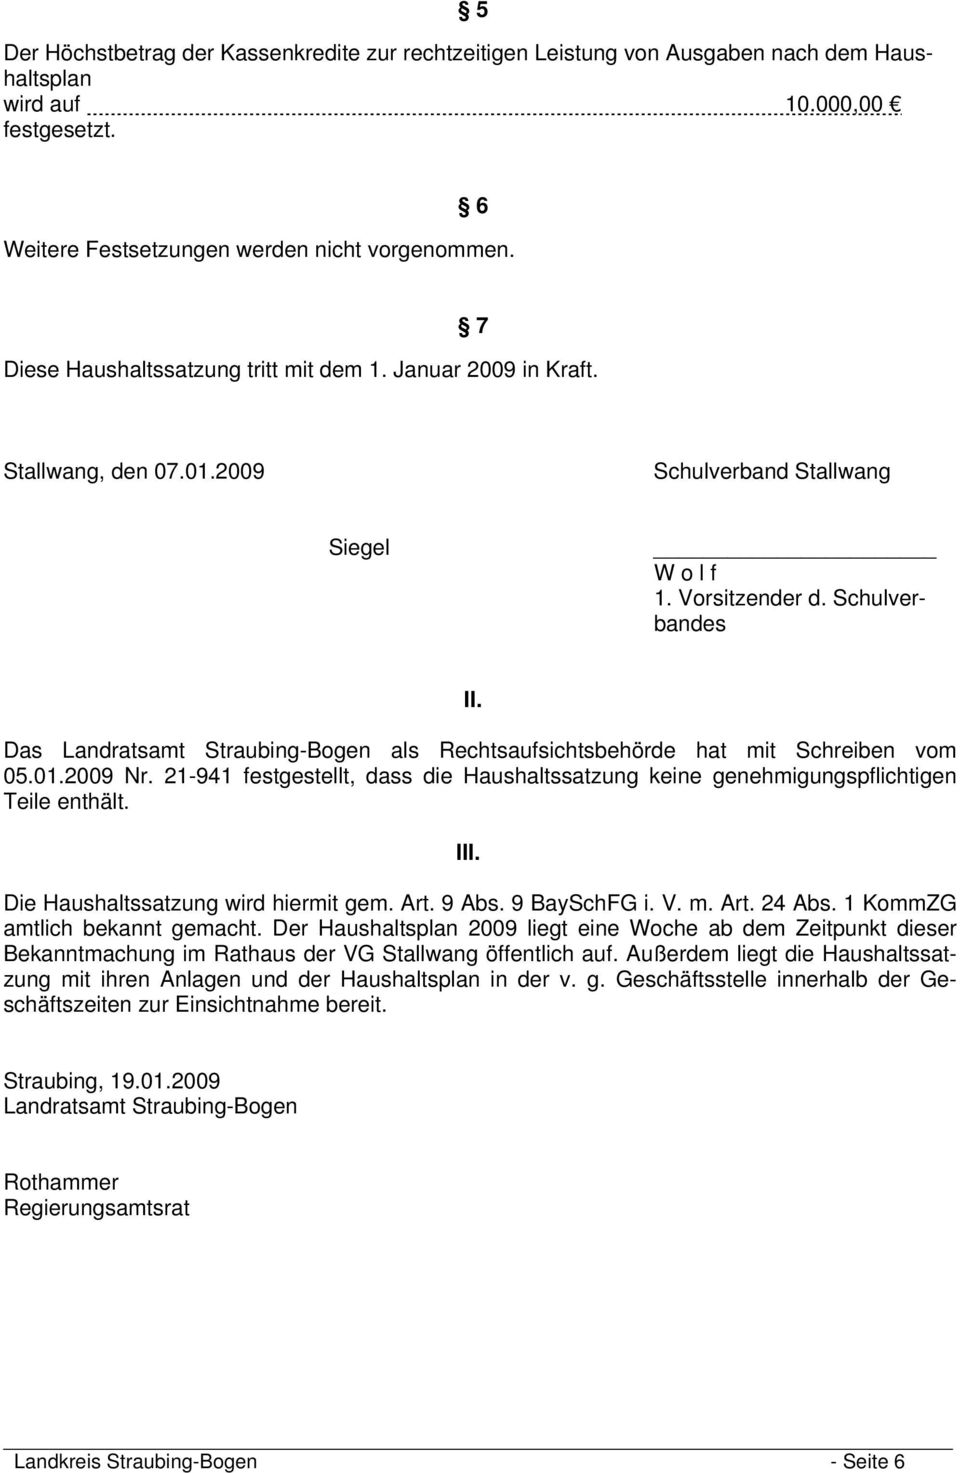 Das Landratsamt Straubing-Bogen als Rechtsaufsichtsbehörde hat mit Schreiben vom 05.01.2009 Nr. 21-941 festgestellt, dass die Haushaltssatzung keine genehmigungspflichtigen Teile enthält. III.